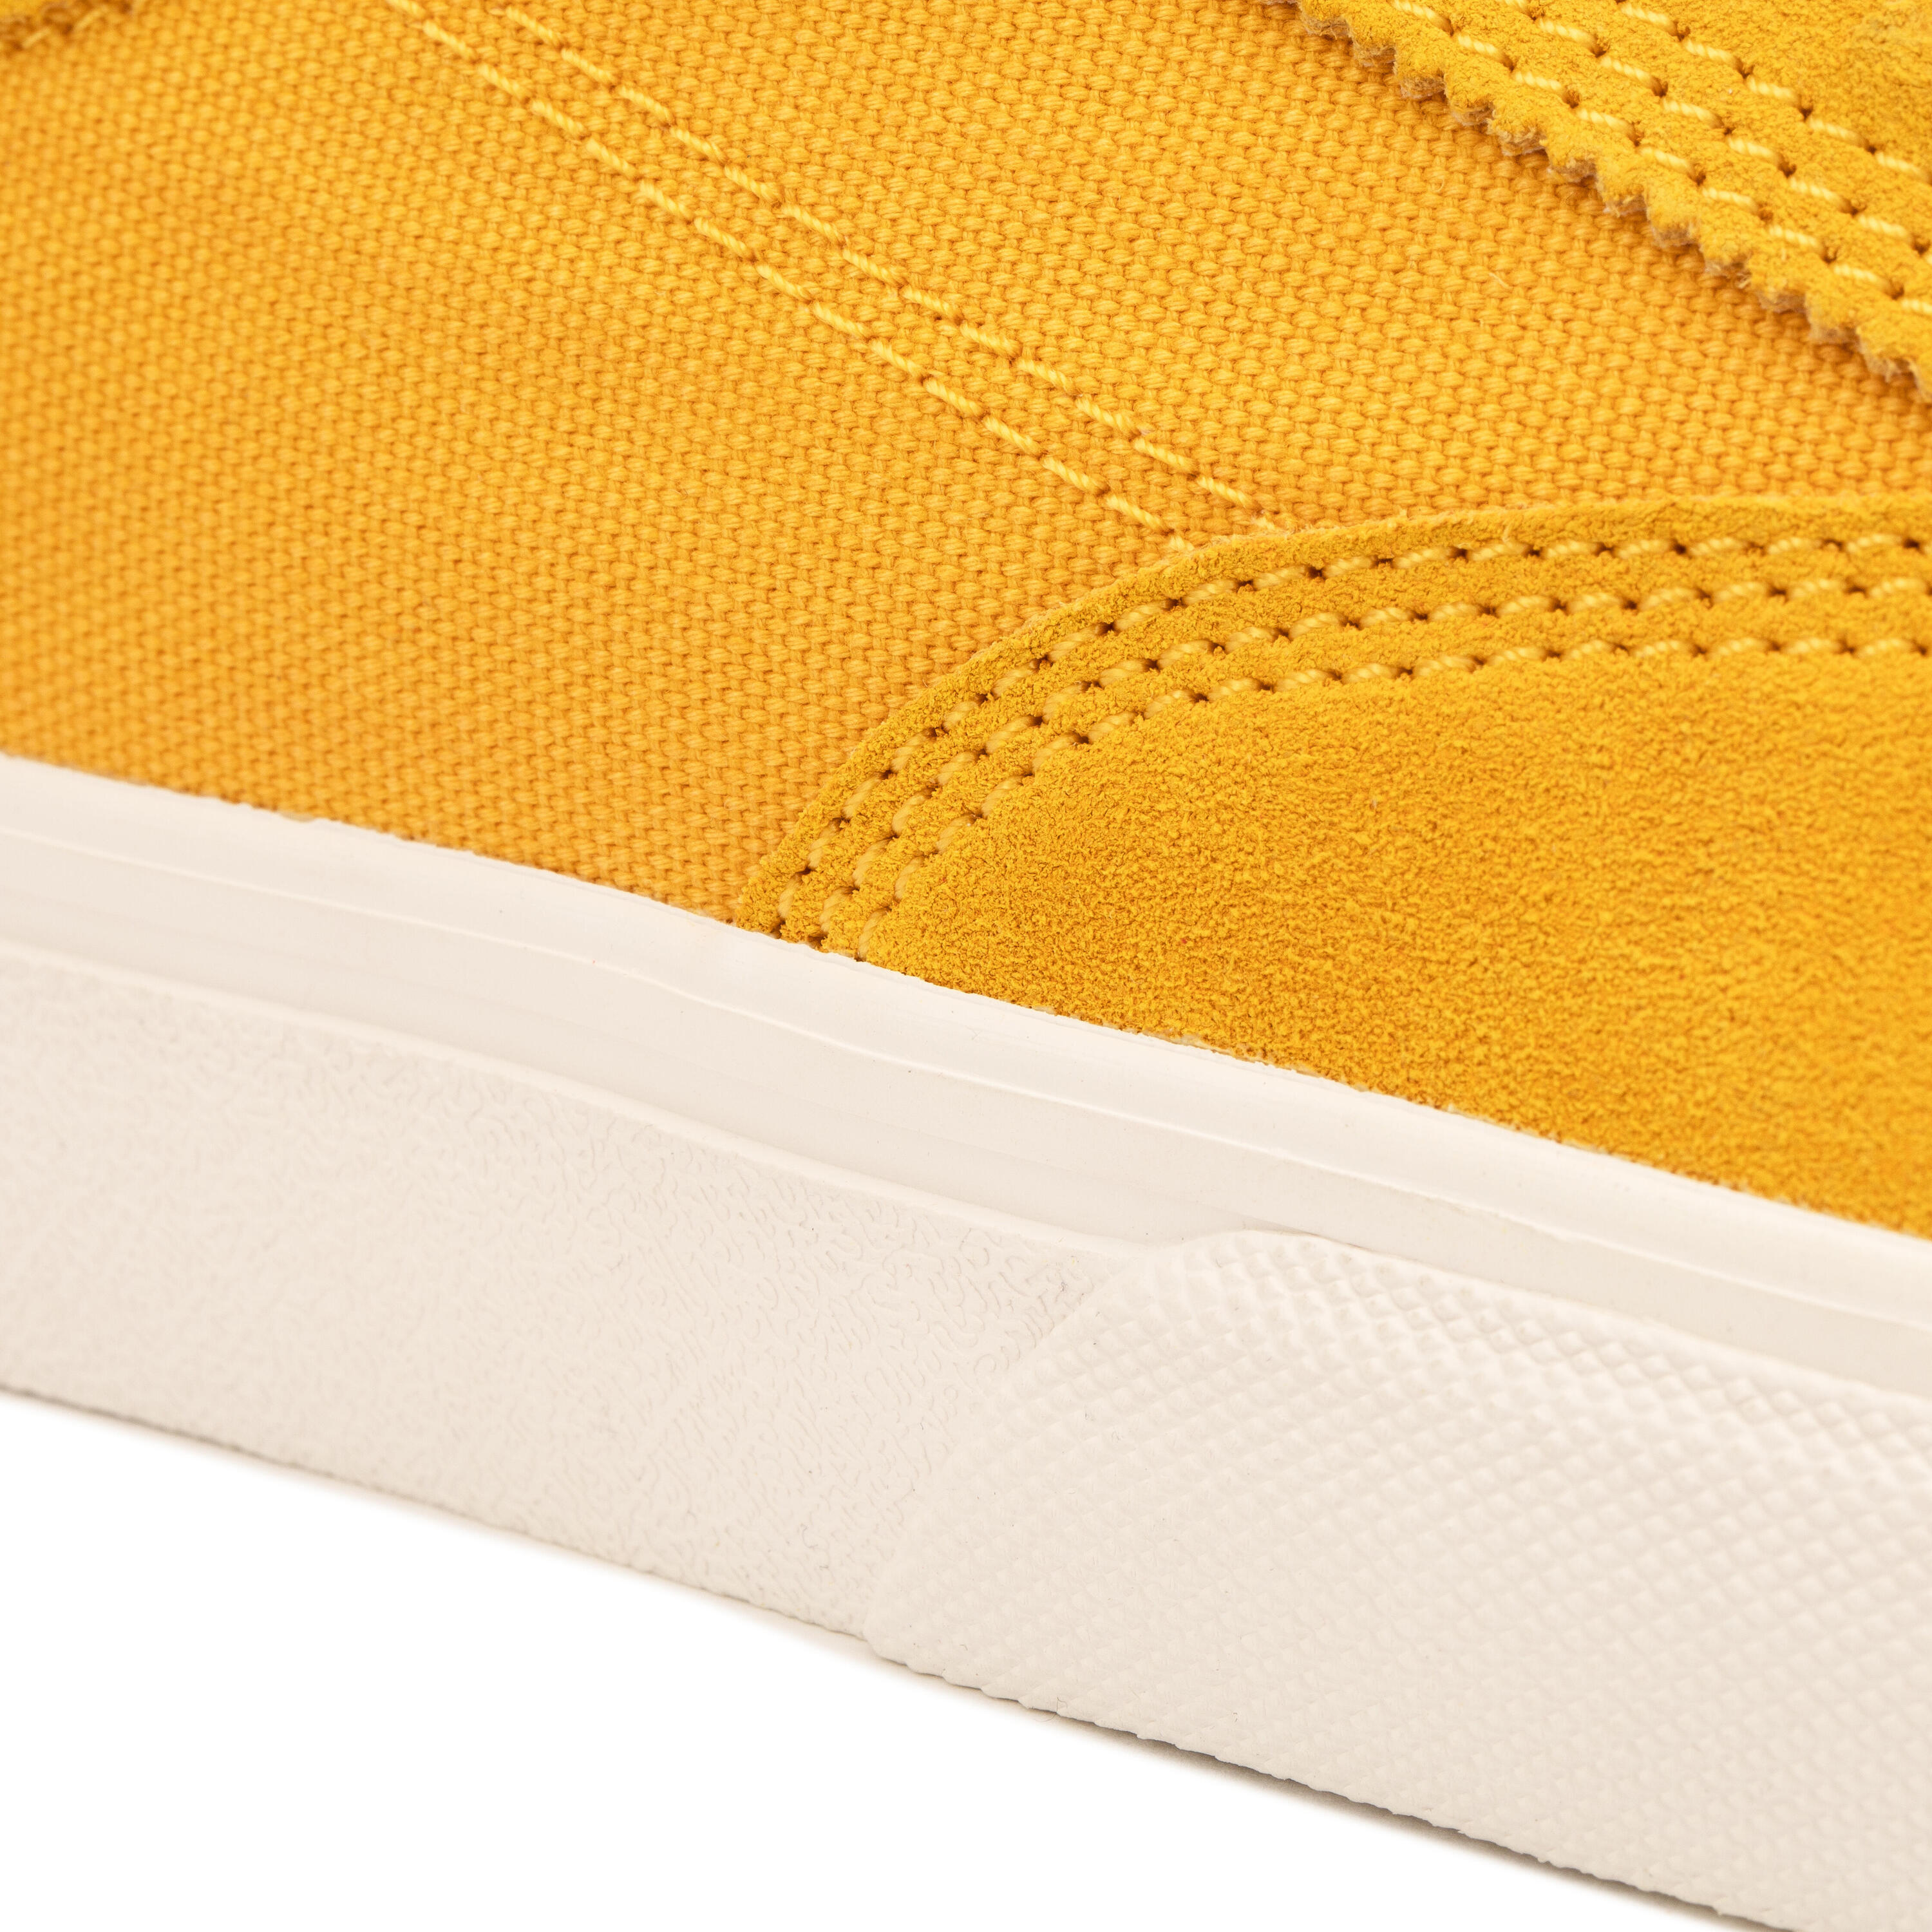 Adult Vulcanised Skate Shoes Vulca 500 II - Yellow/White 12/14